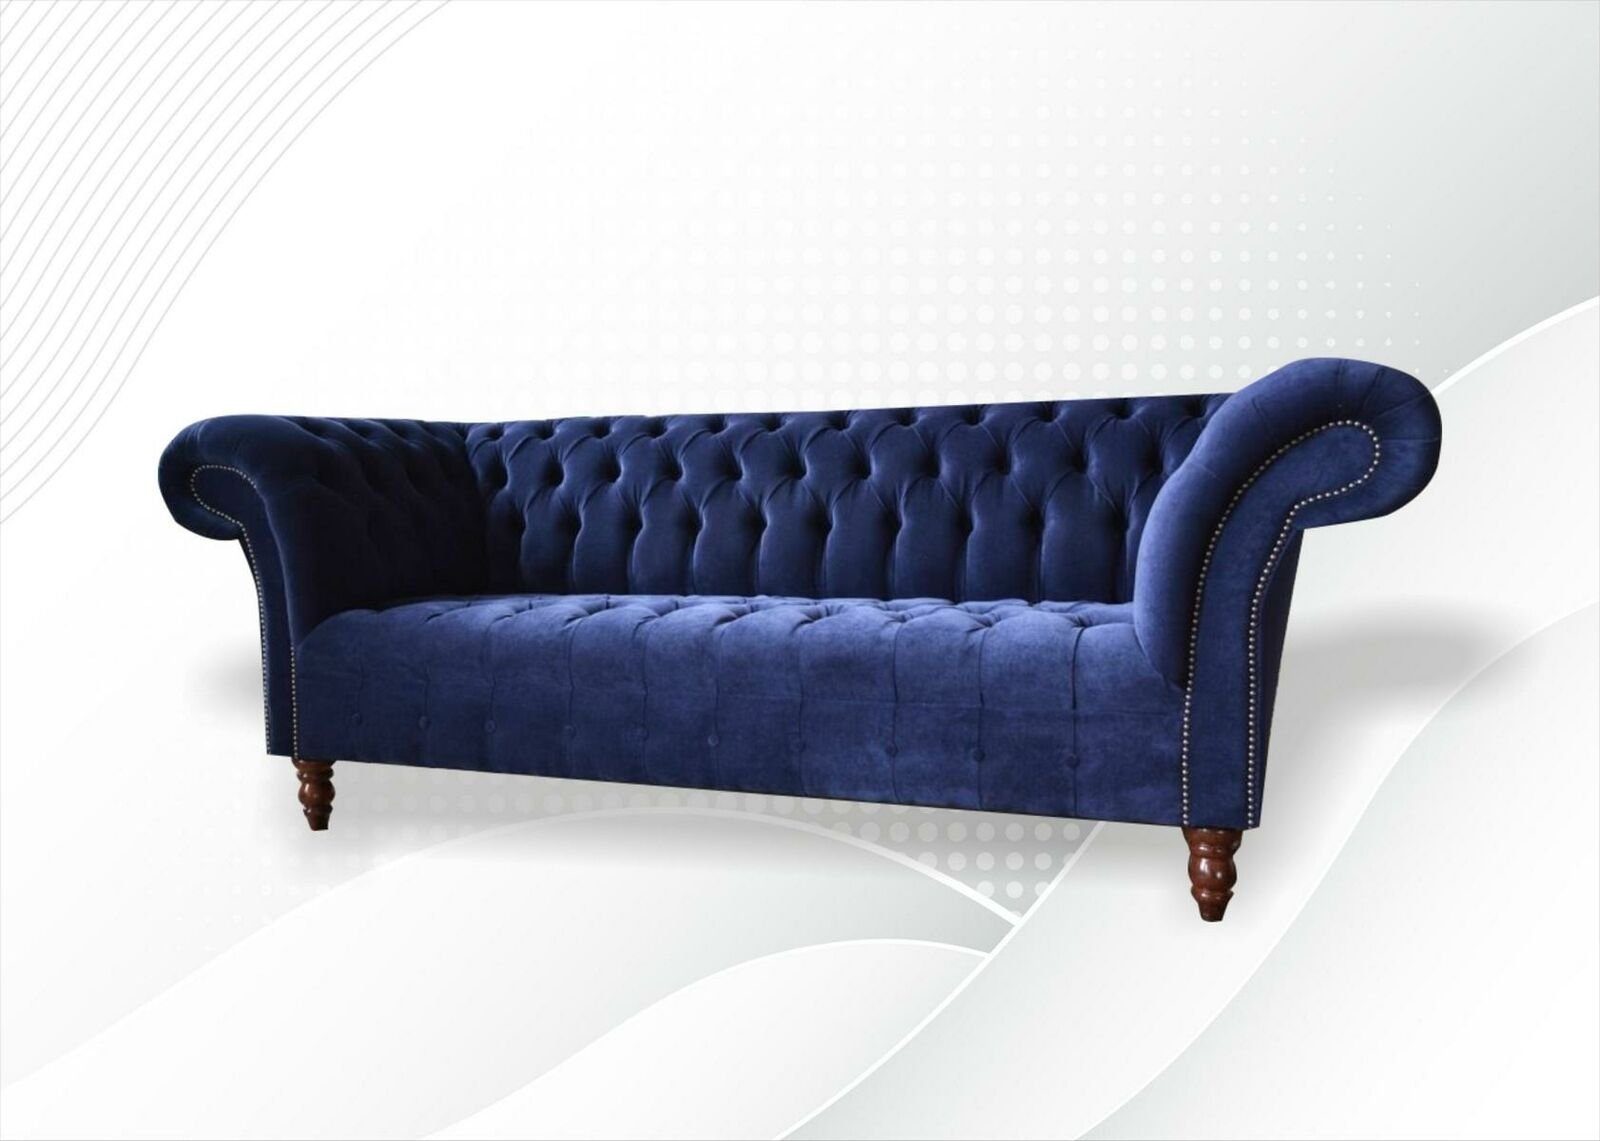 JVmoebel Chesterfield-Sofa Dunkelblauer Chesterfield 3-er luxus Möbel Textilmöbel Neu, Made in Europe | Chesterfield-Sofas